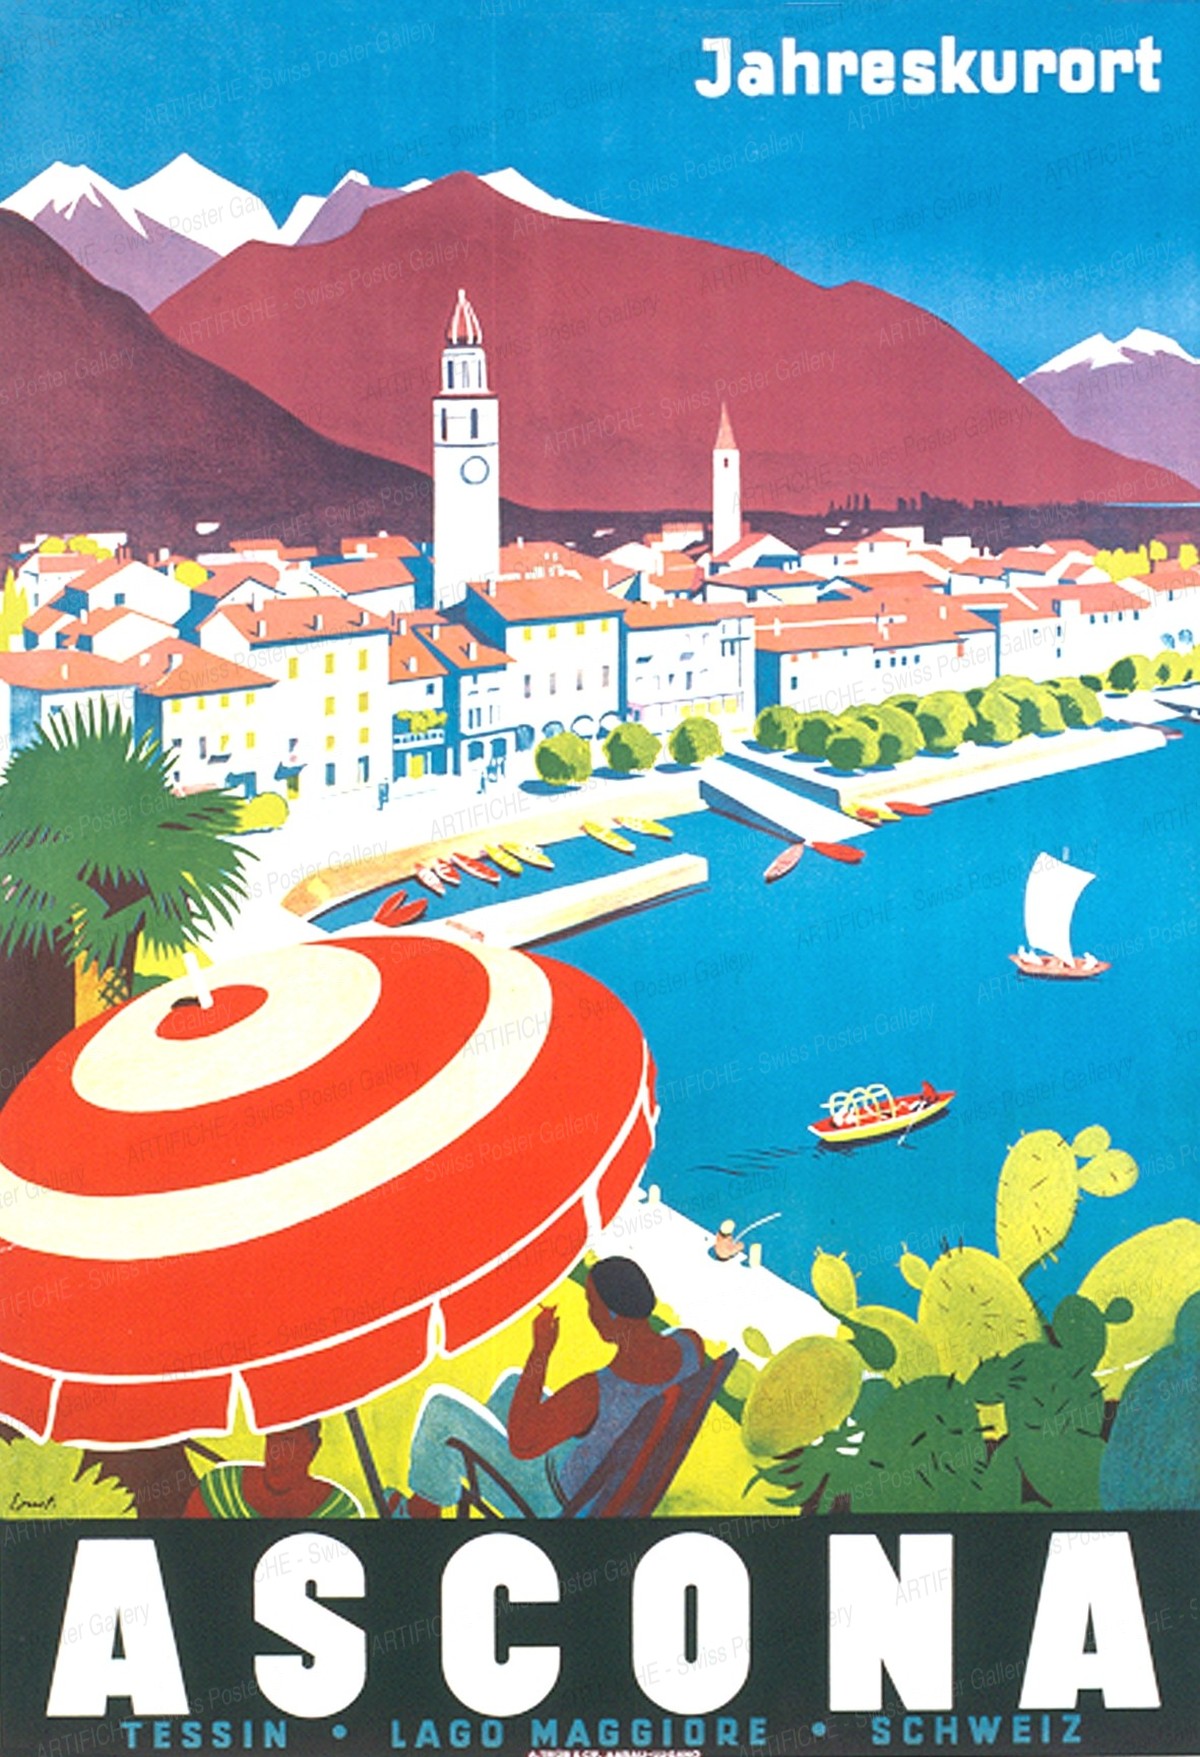 Ascona – Ticino – All-Season Health Resort, Otto Ernst